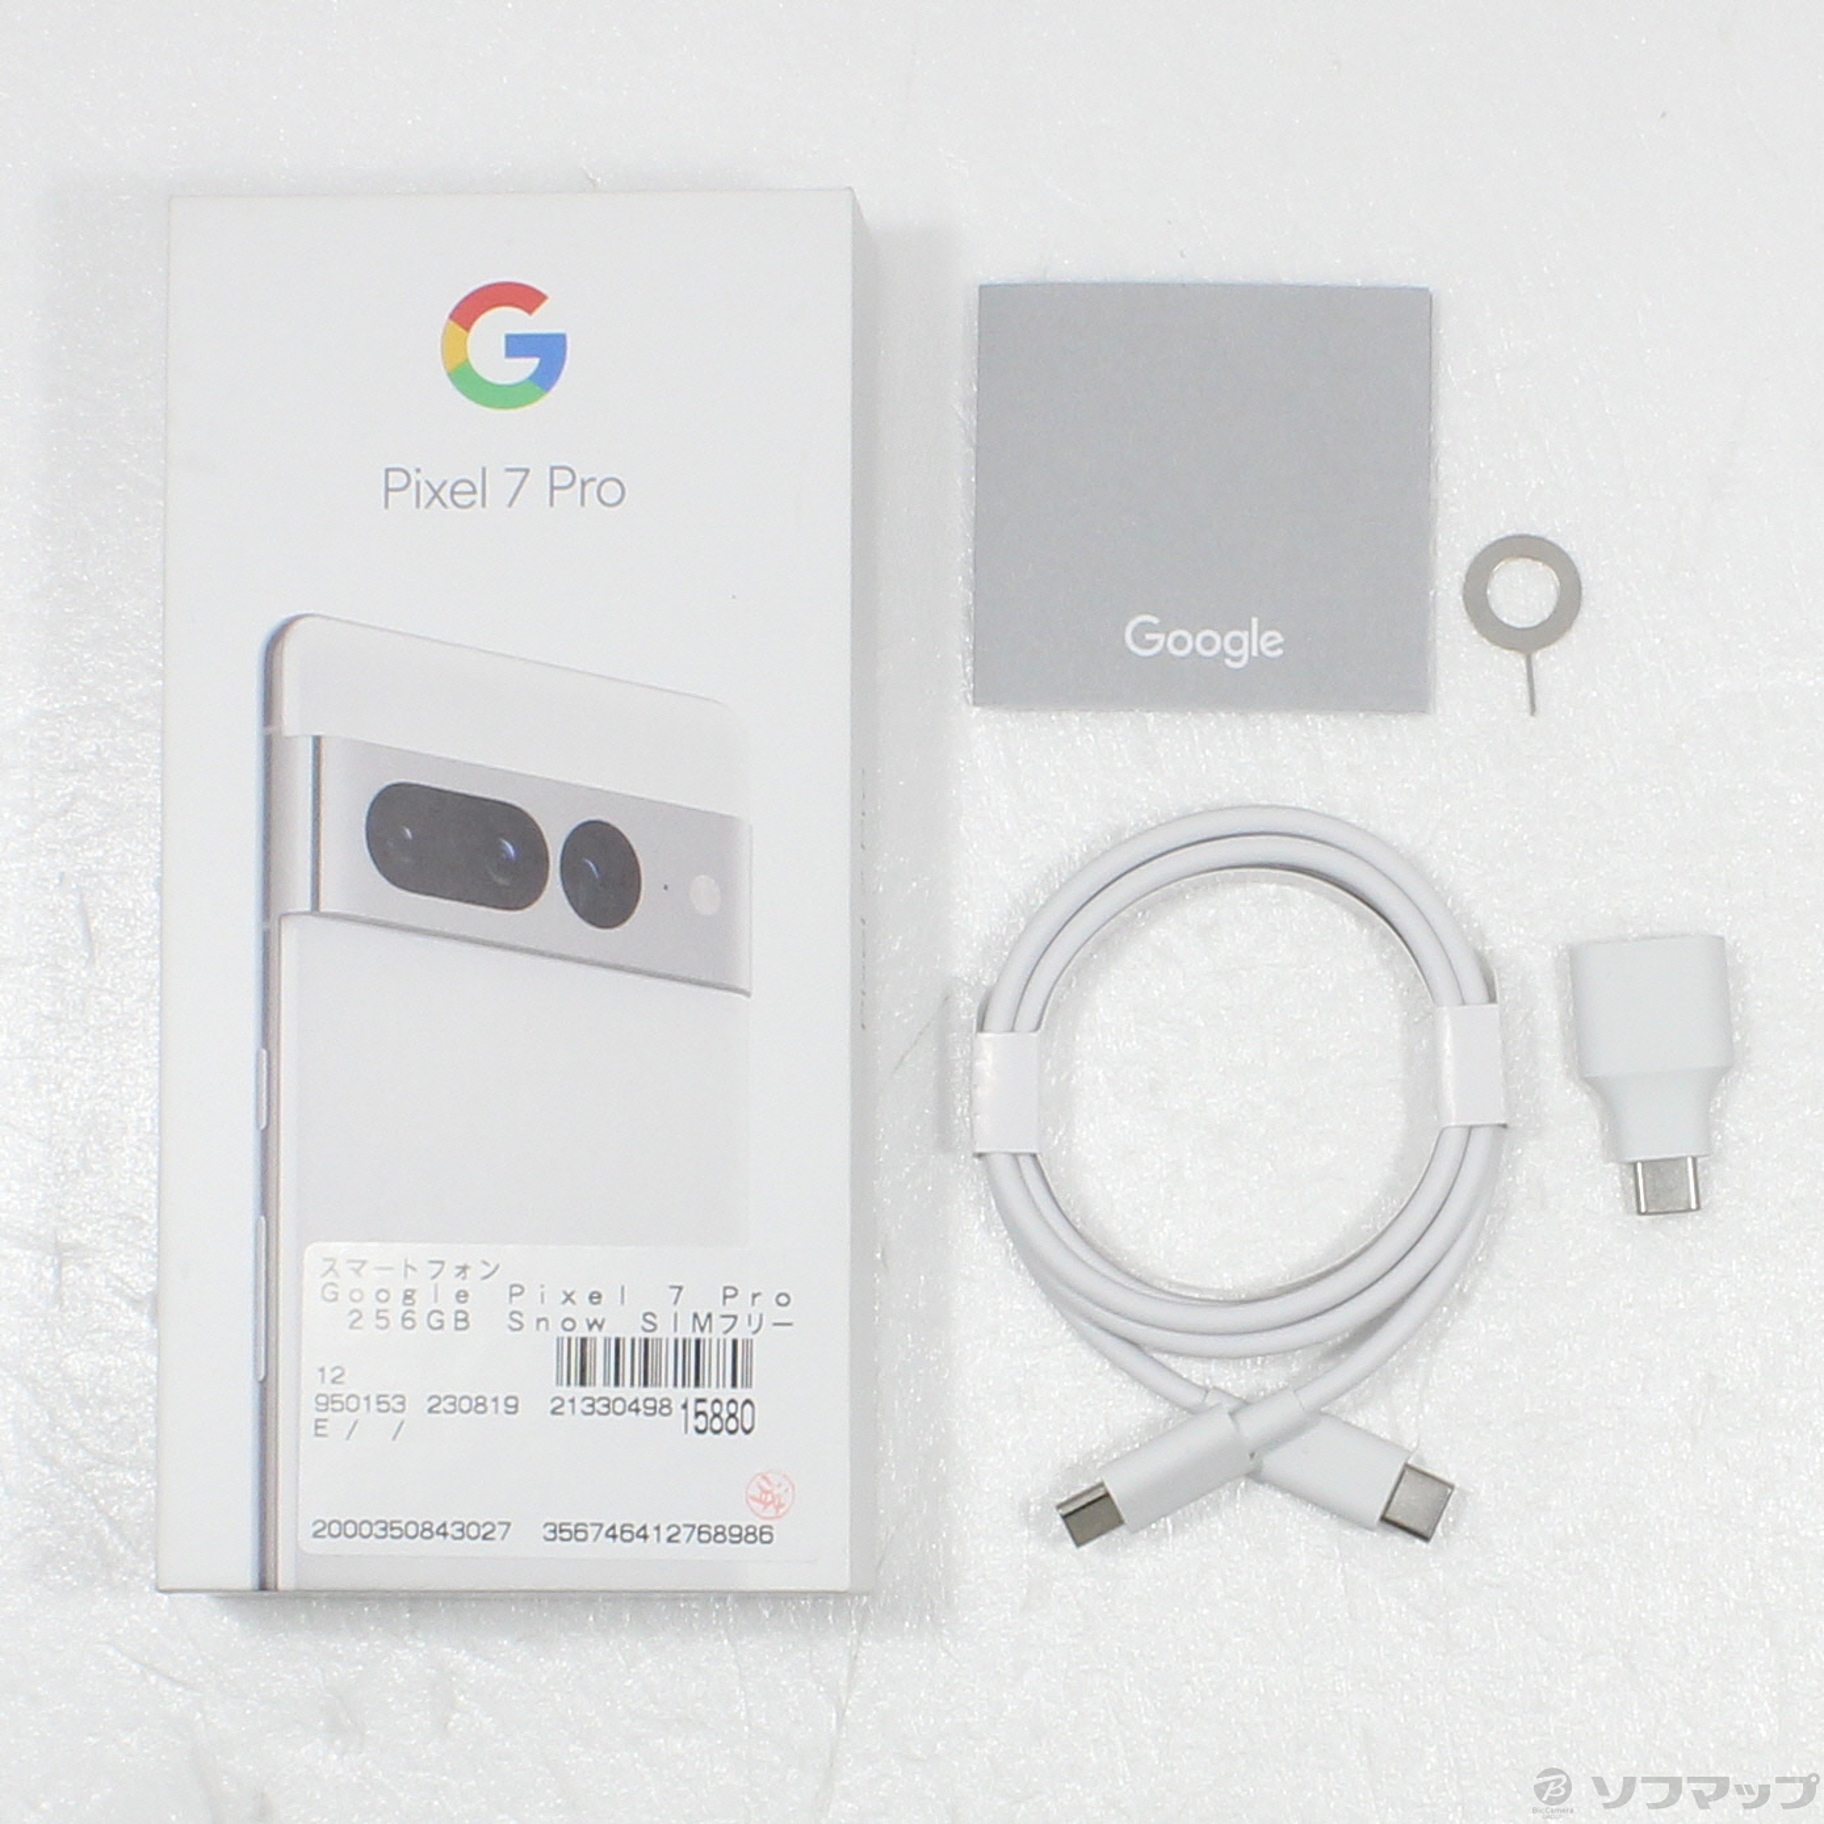 中古】Google Pixel 7 Pro 256GB Snow SIMフリー [2133049815880